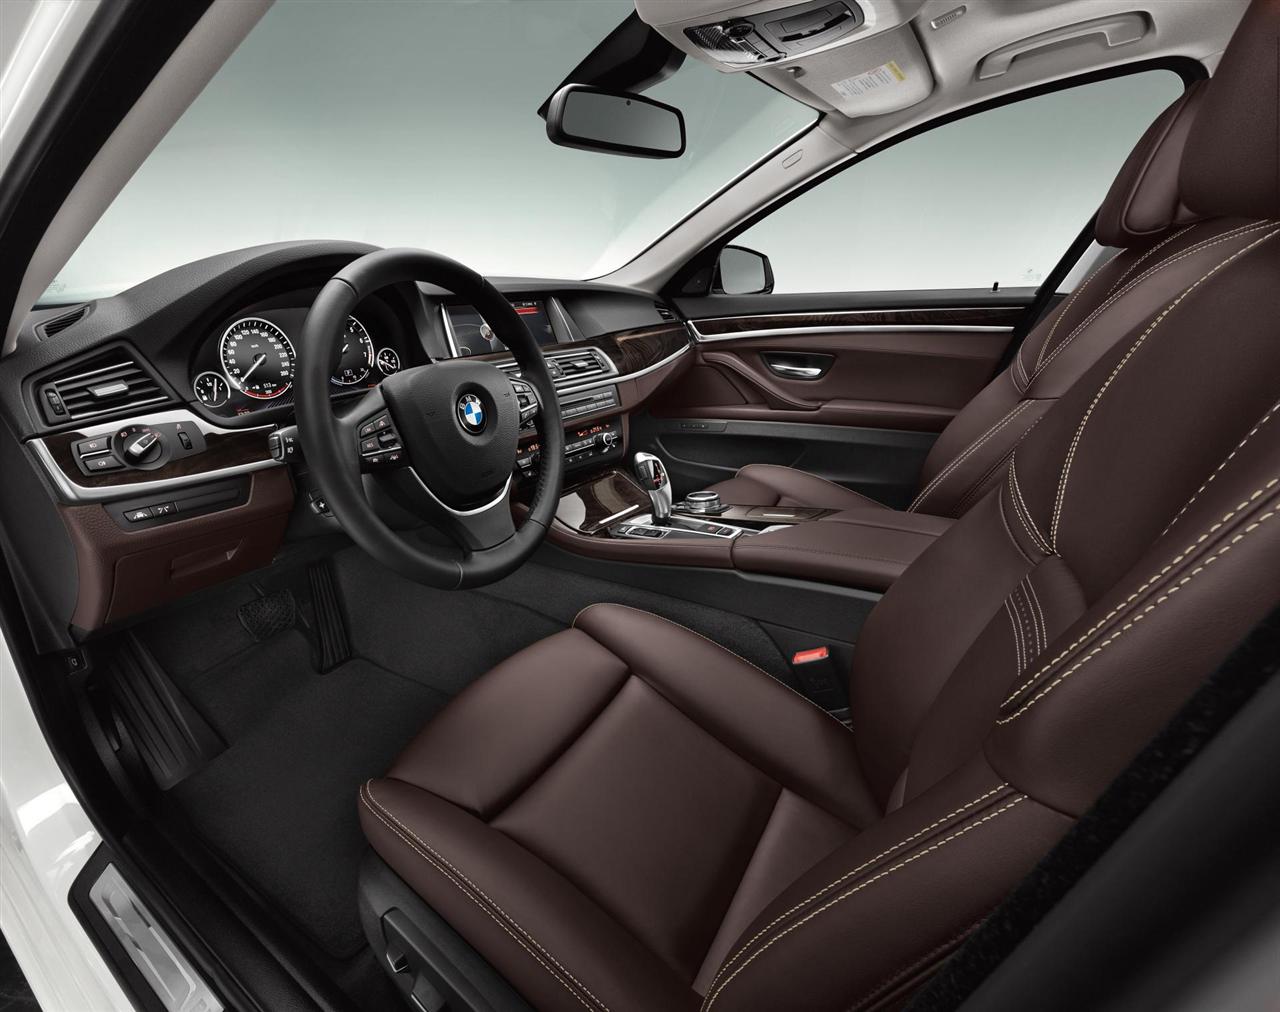 2014 BMW 5 Series Touring